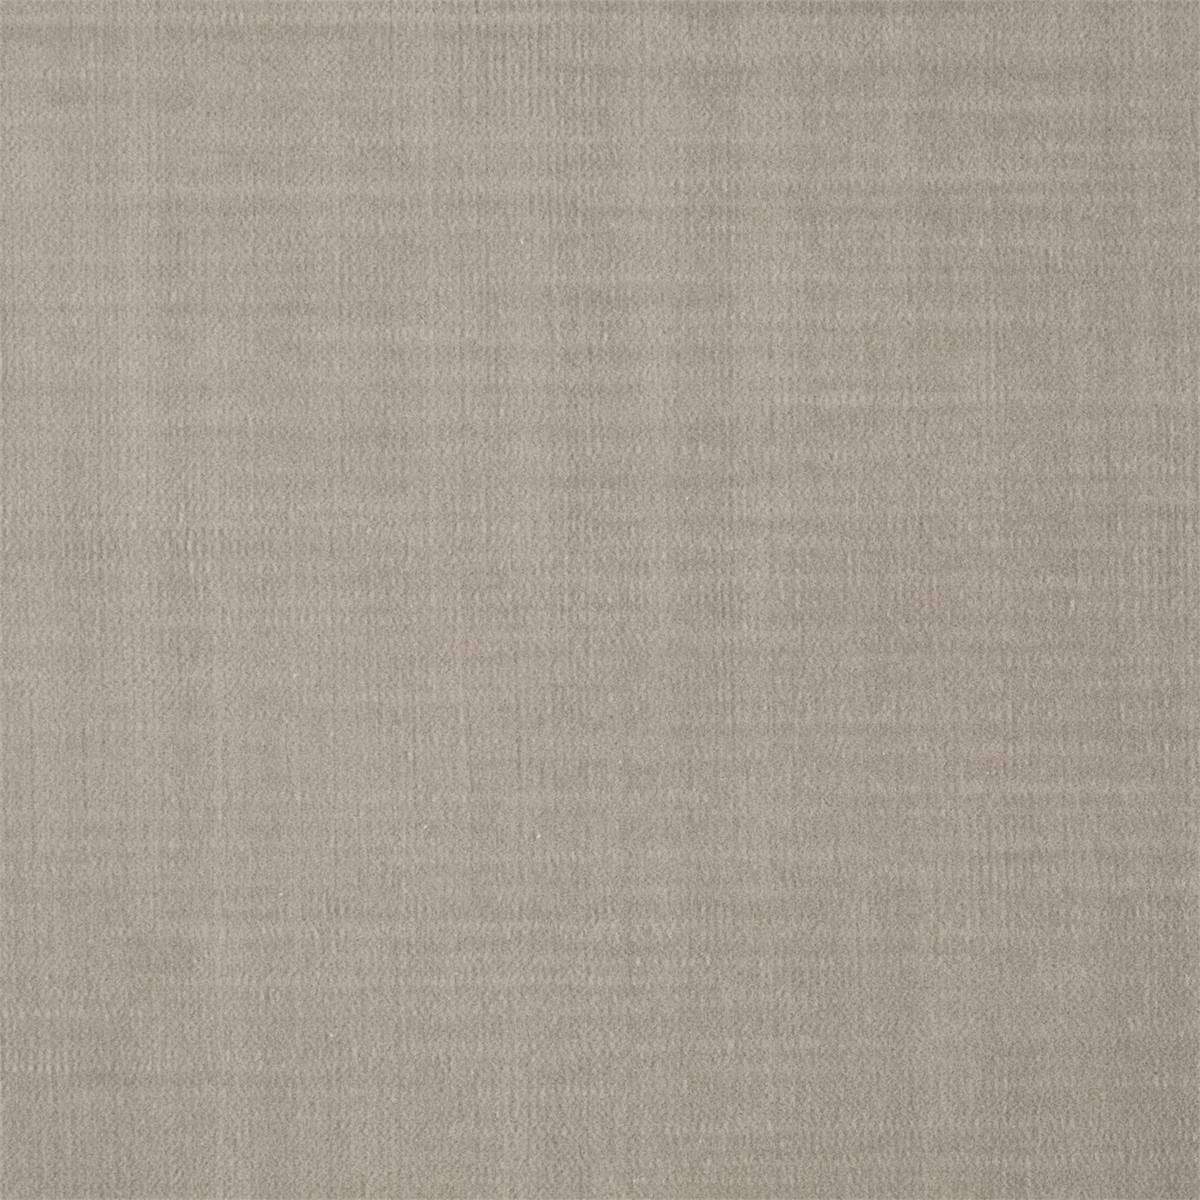 Birodo Linen Fabric by Zoffany